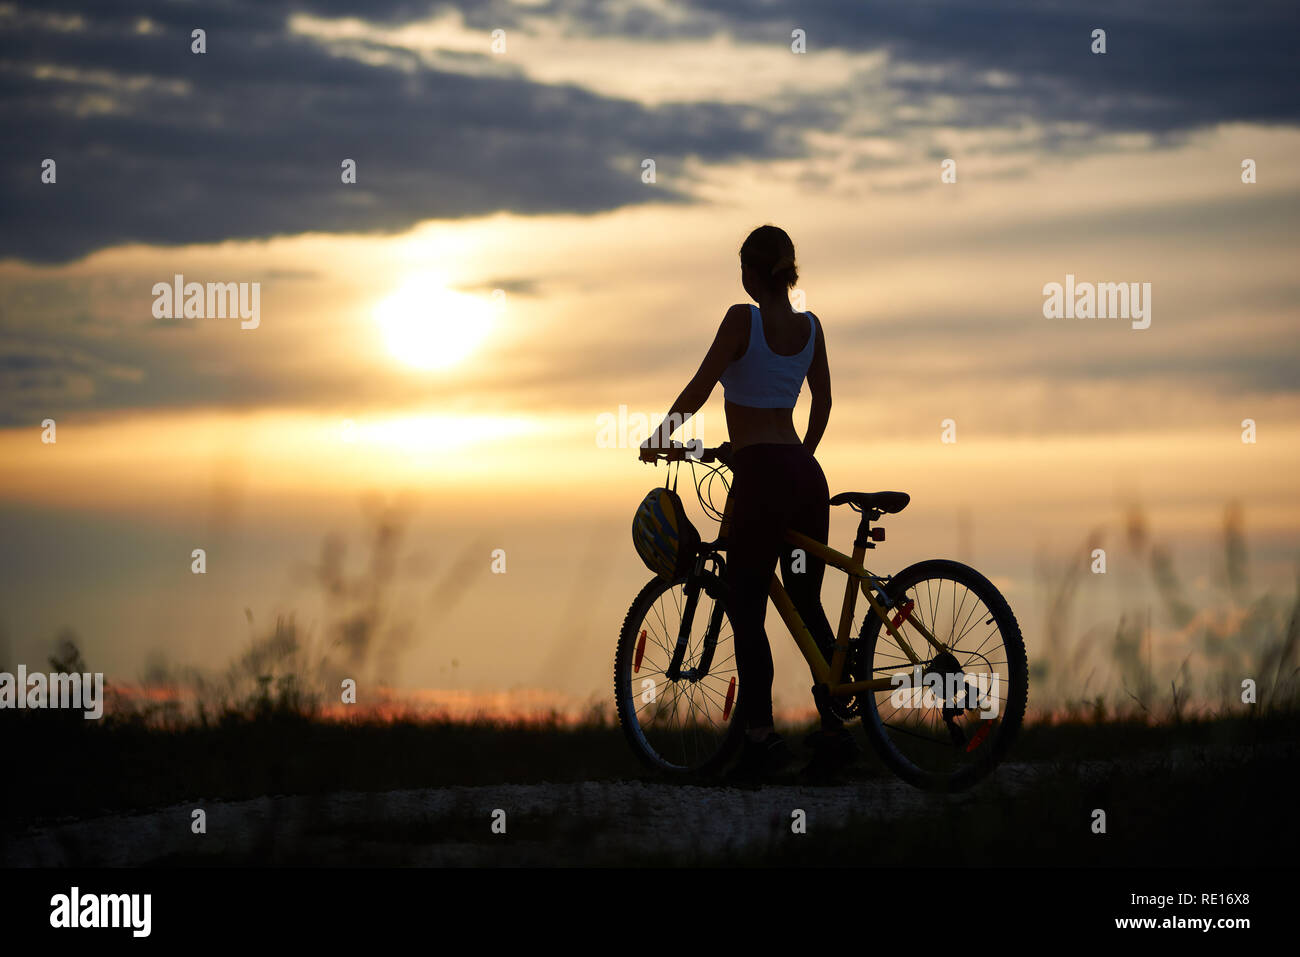 Rückansicht der Frau mit dem Fahrrad auf der Straße unter Gras genießen den Sonnenuntergang am Abendhimmel. Das Mädchen hat einen schönen sportlichen Körper. Helm hängt an den Griff des Fahrrad Stockfoto